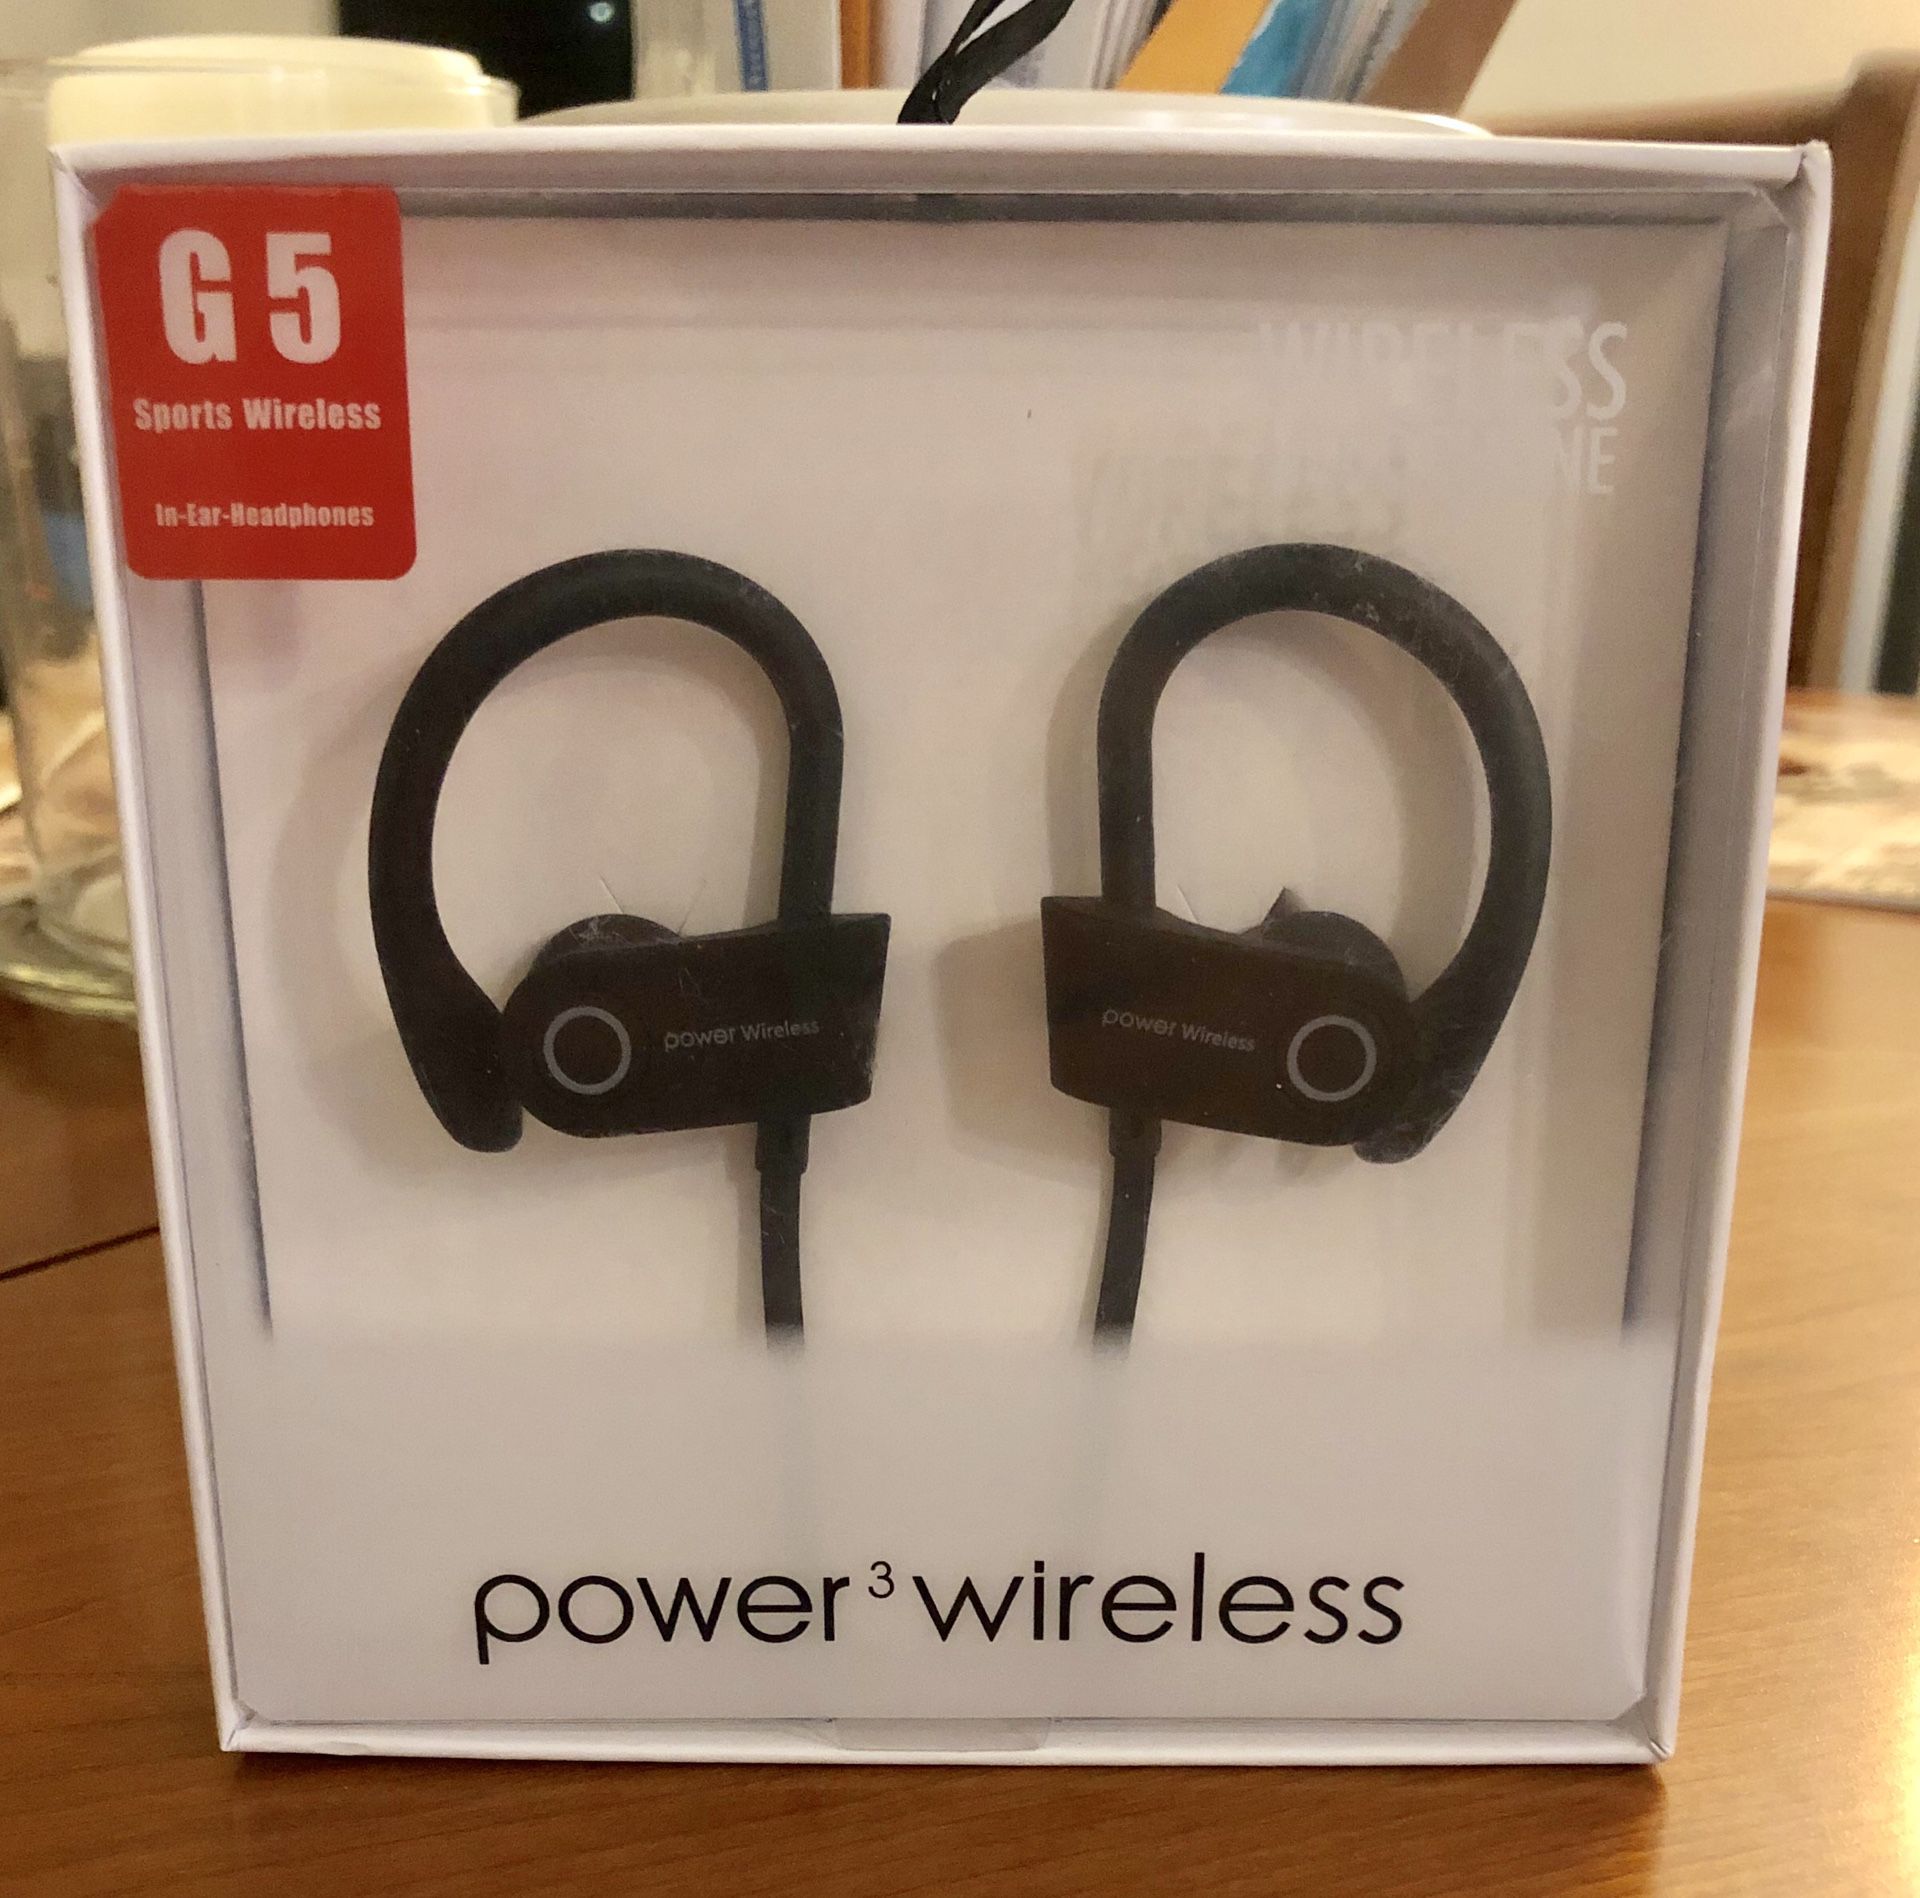 Sports Wireless Earphones Power3 G5